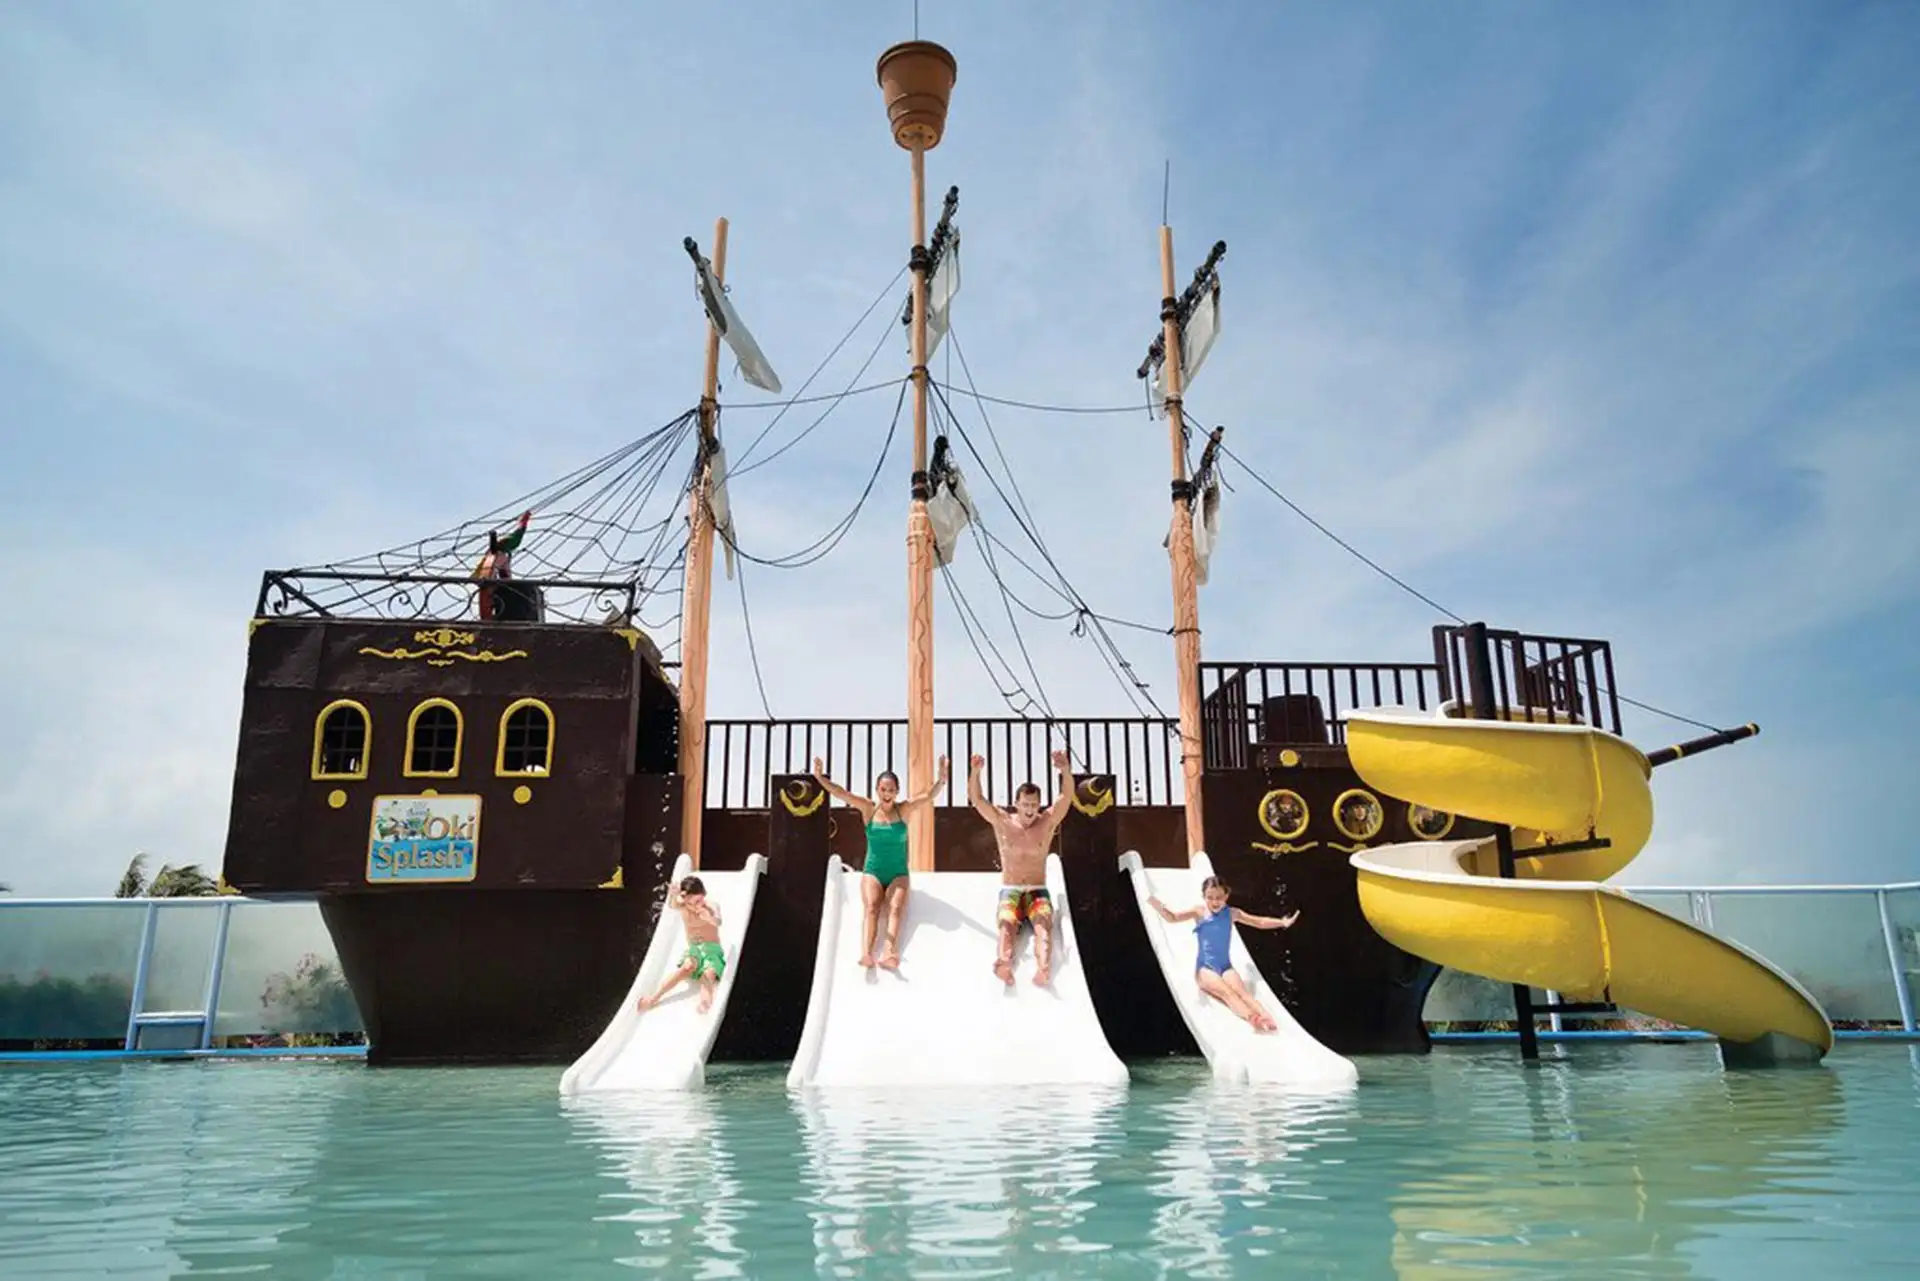 The water park at Panama Jack Resorts Cancun; Photo Courtesy of Panama Jack Resorts Cancun